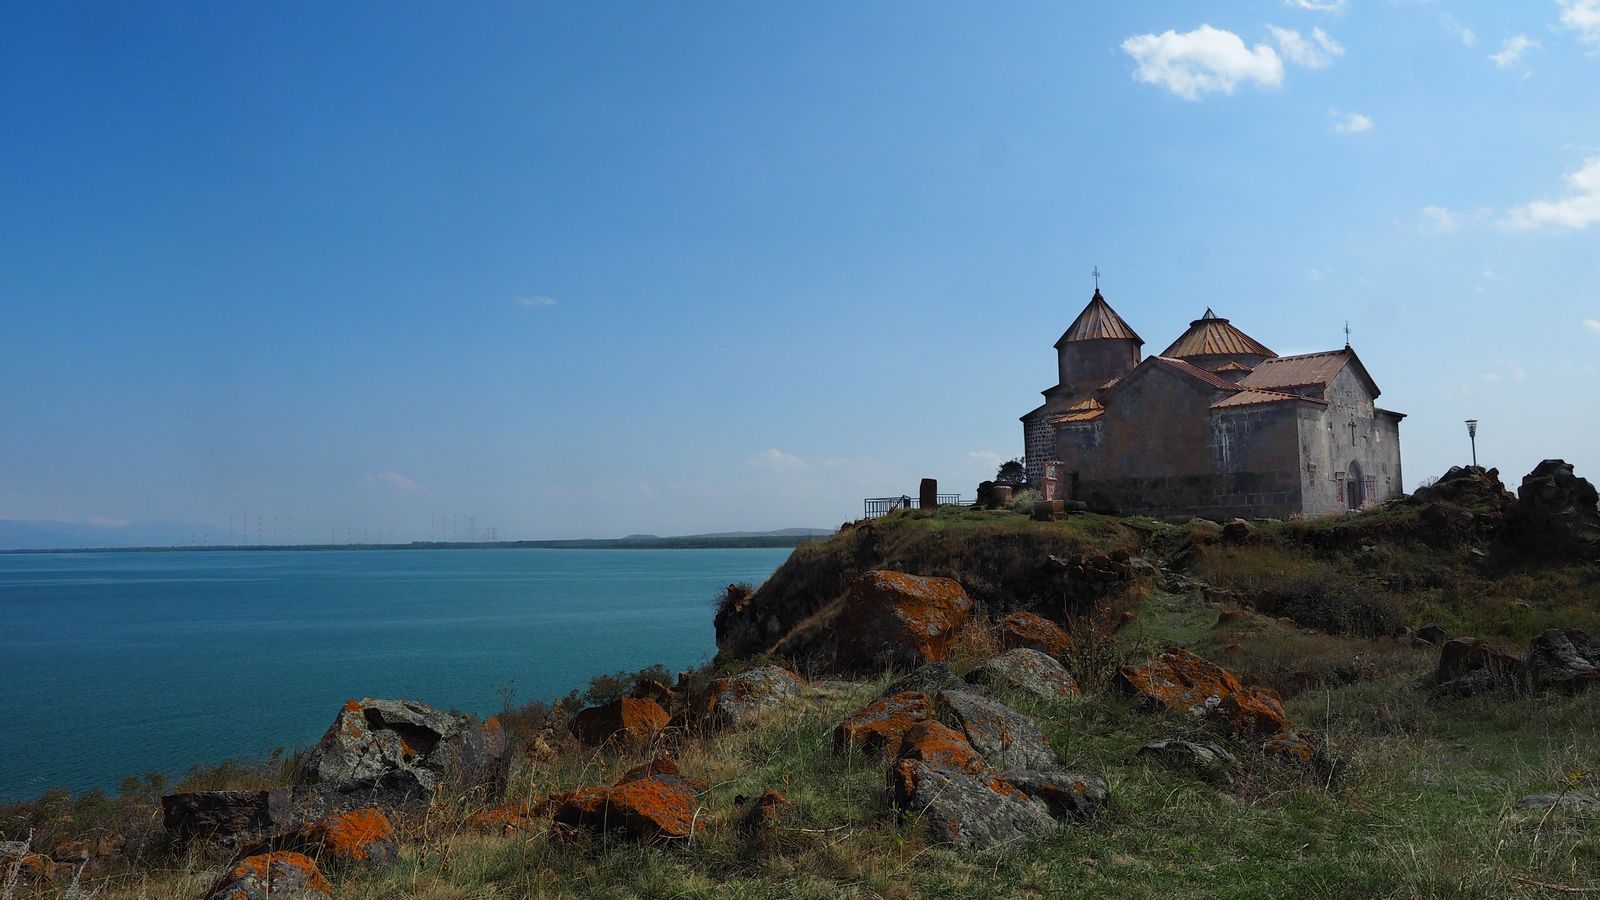 Radreise Armenien: Kloster Hayrawank am Sewansee